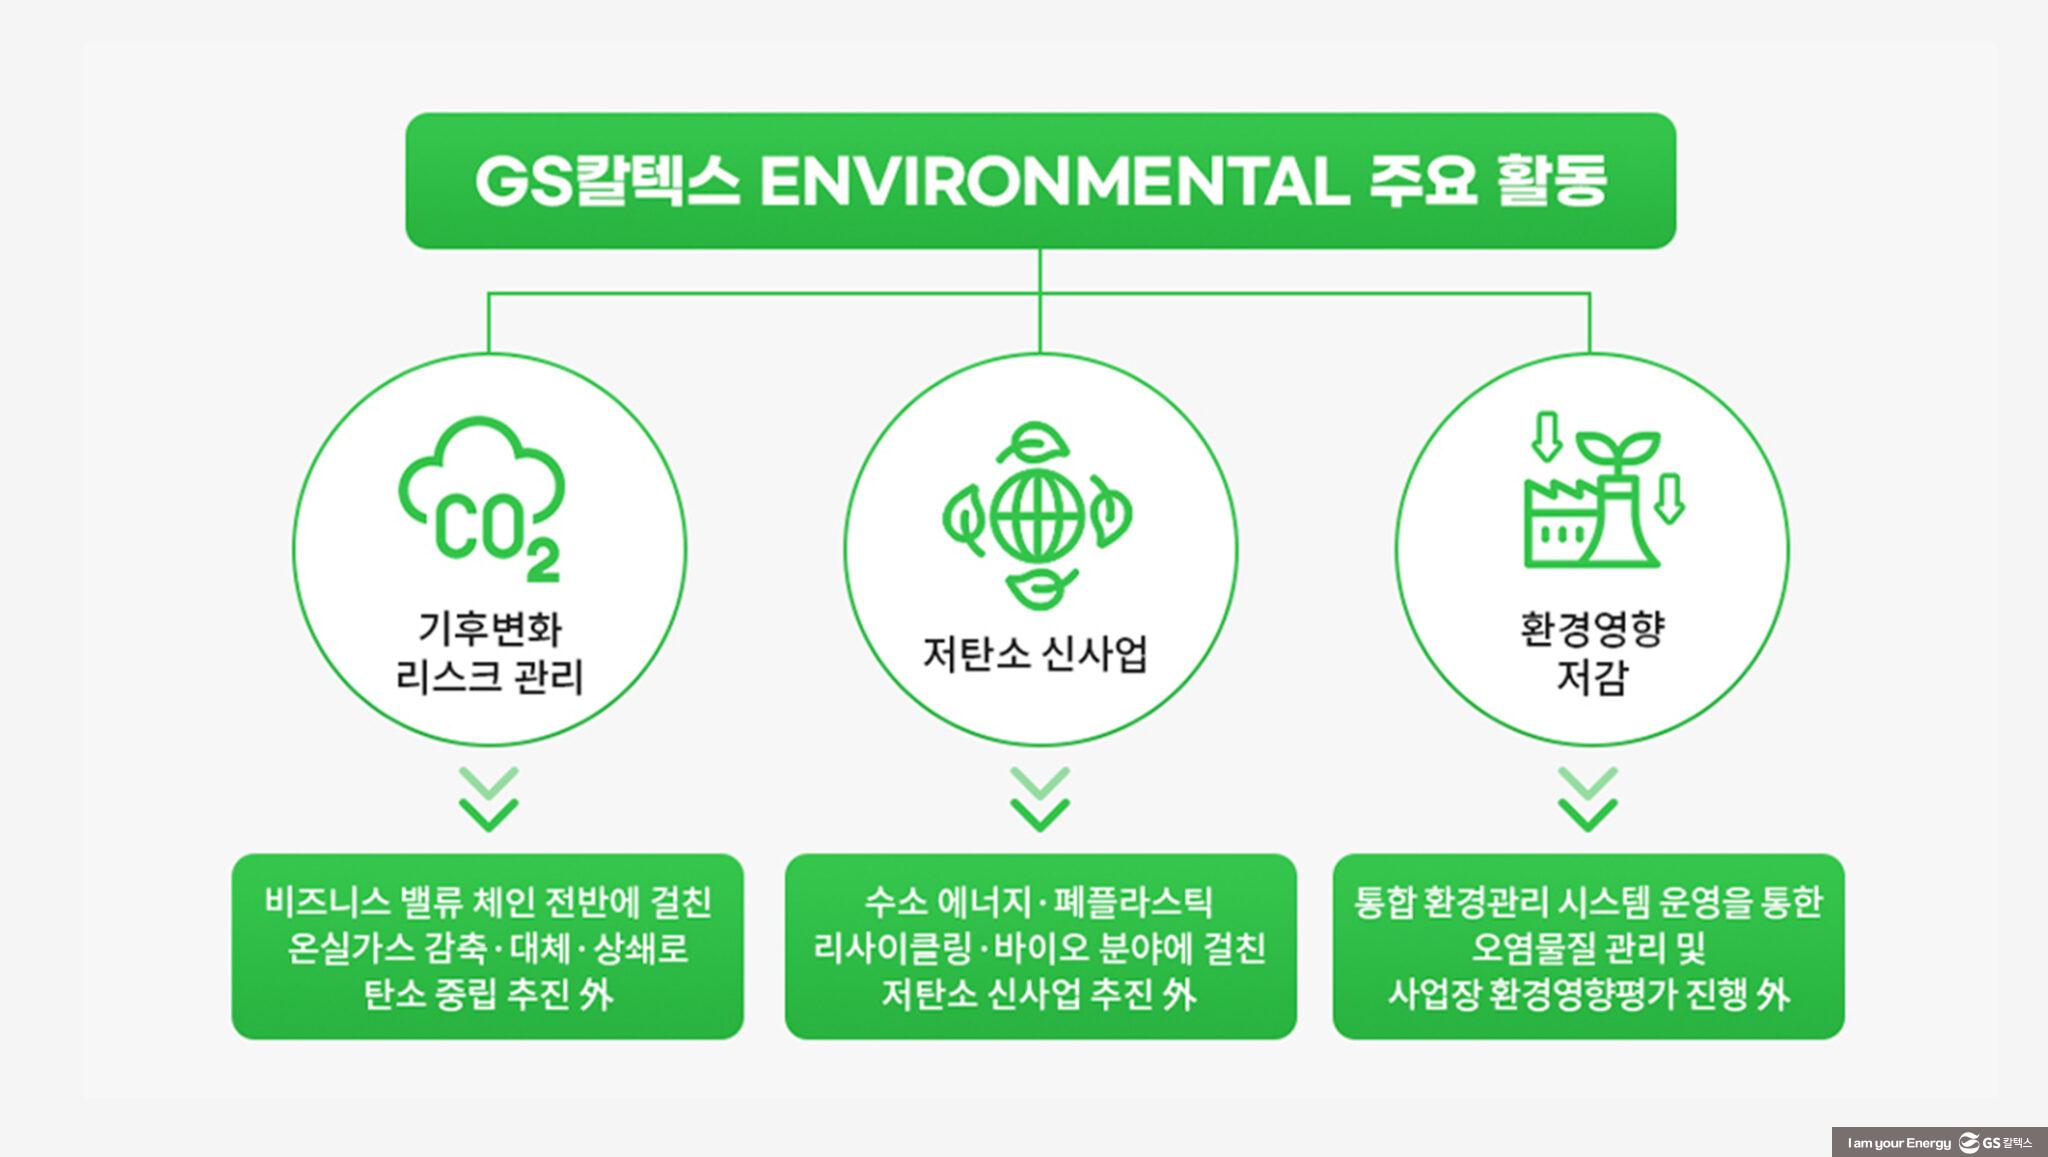 GS칼텍스 2022년 지속가능성보고서 톺아보기 (1) 환경(Environmental) 편